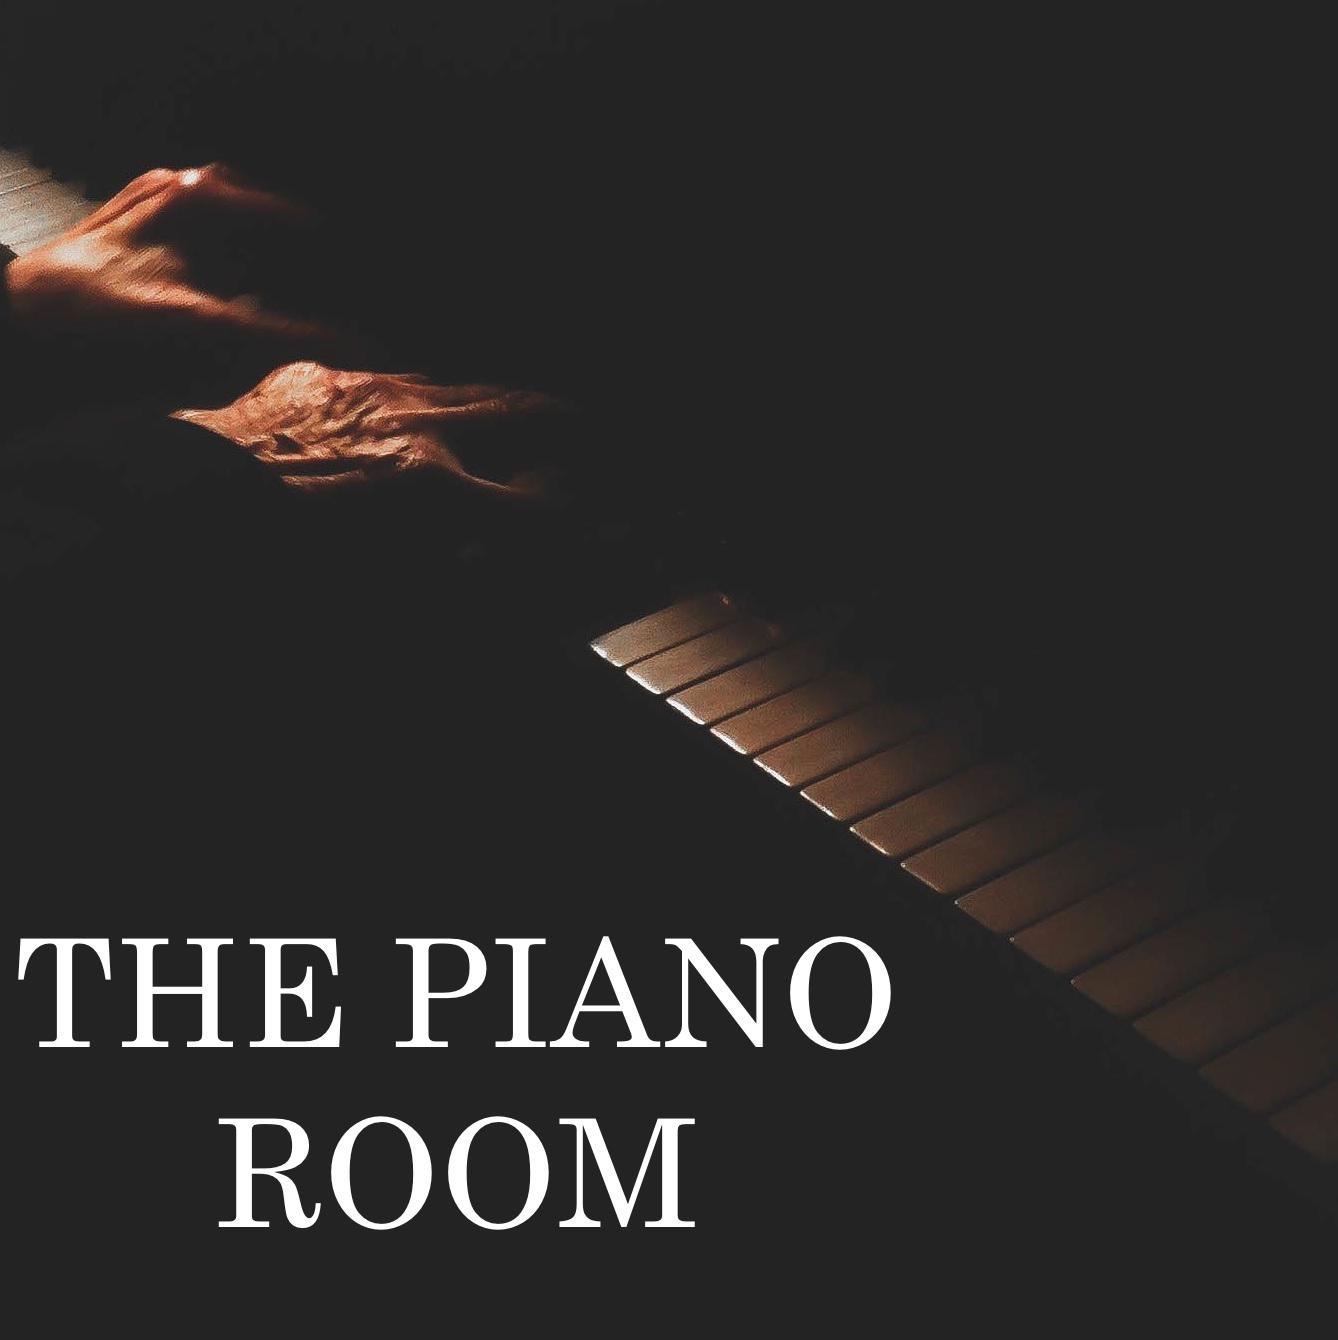 Remove Stress by Piano